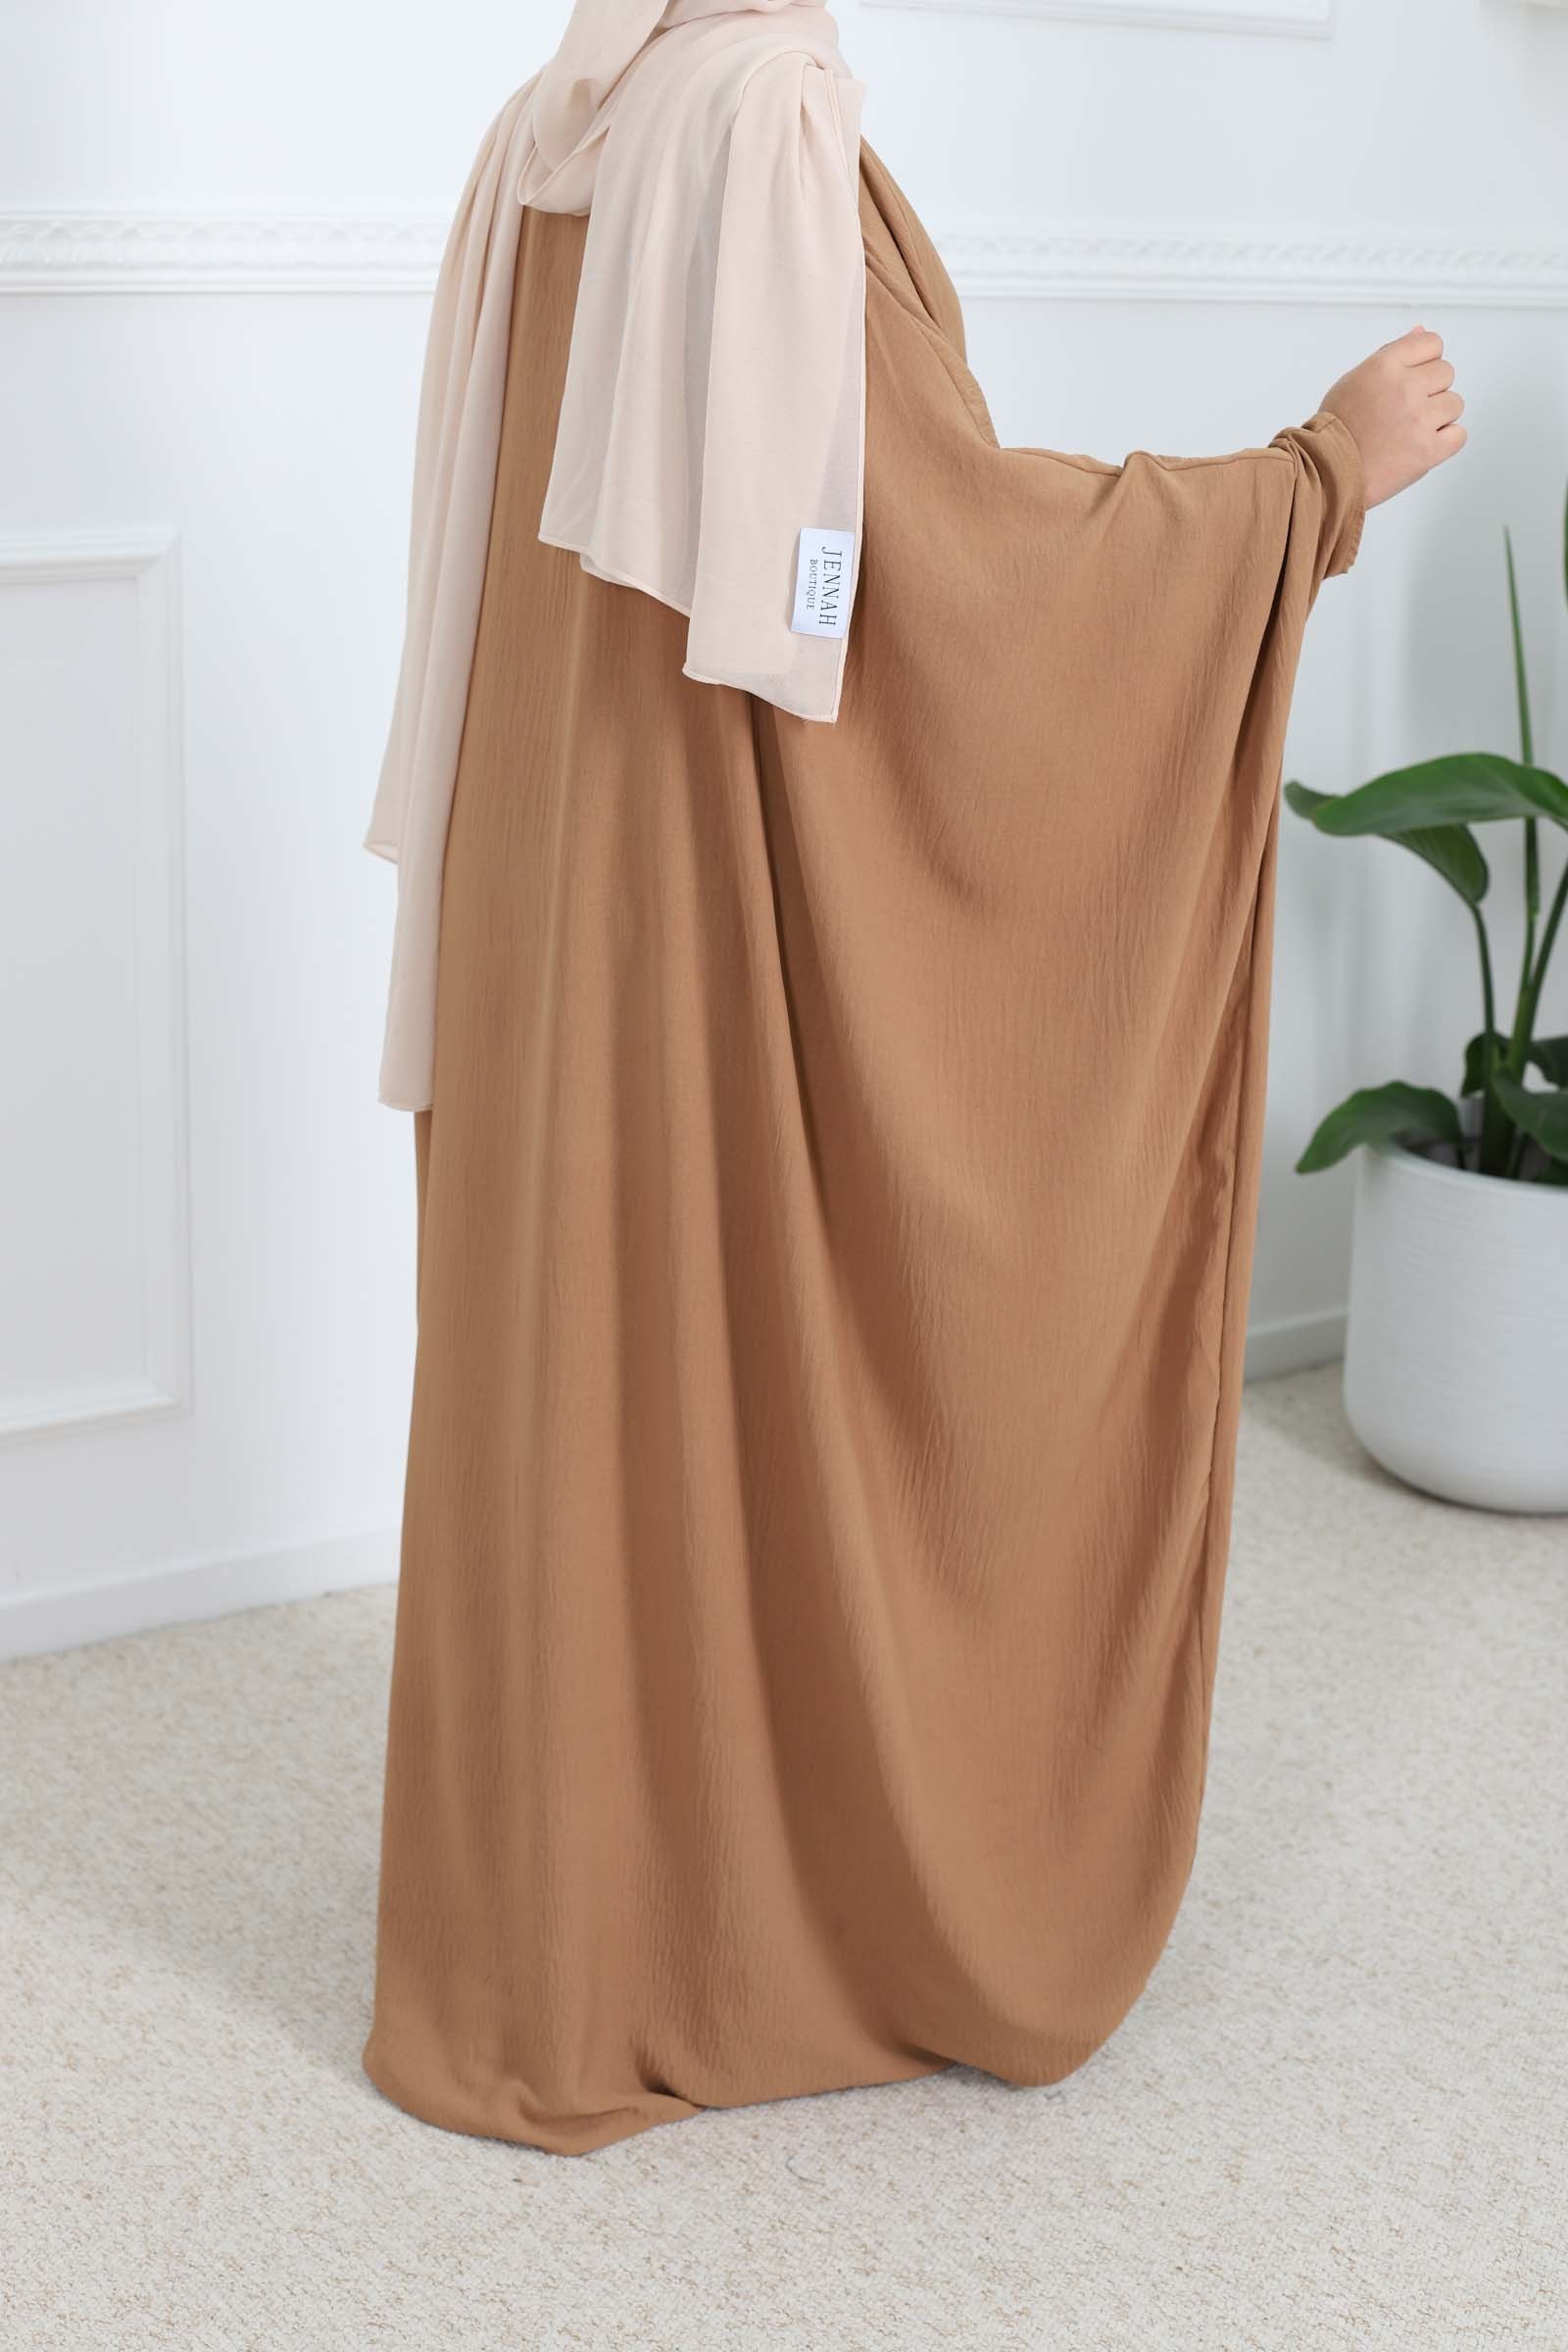 Saudi abaya for women small ptix, cheap farasha abaya, abaya